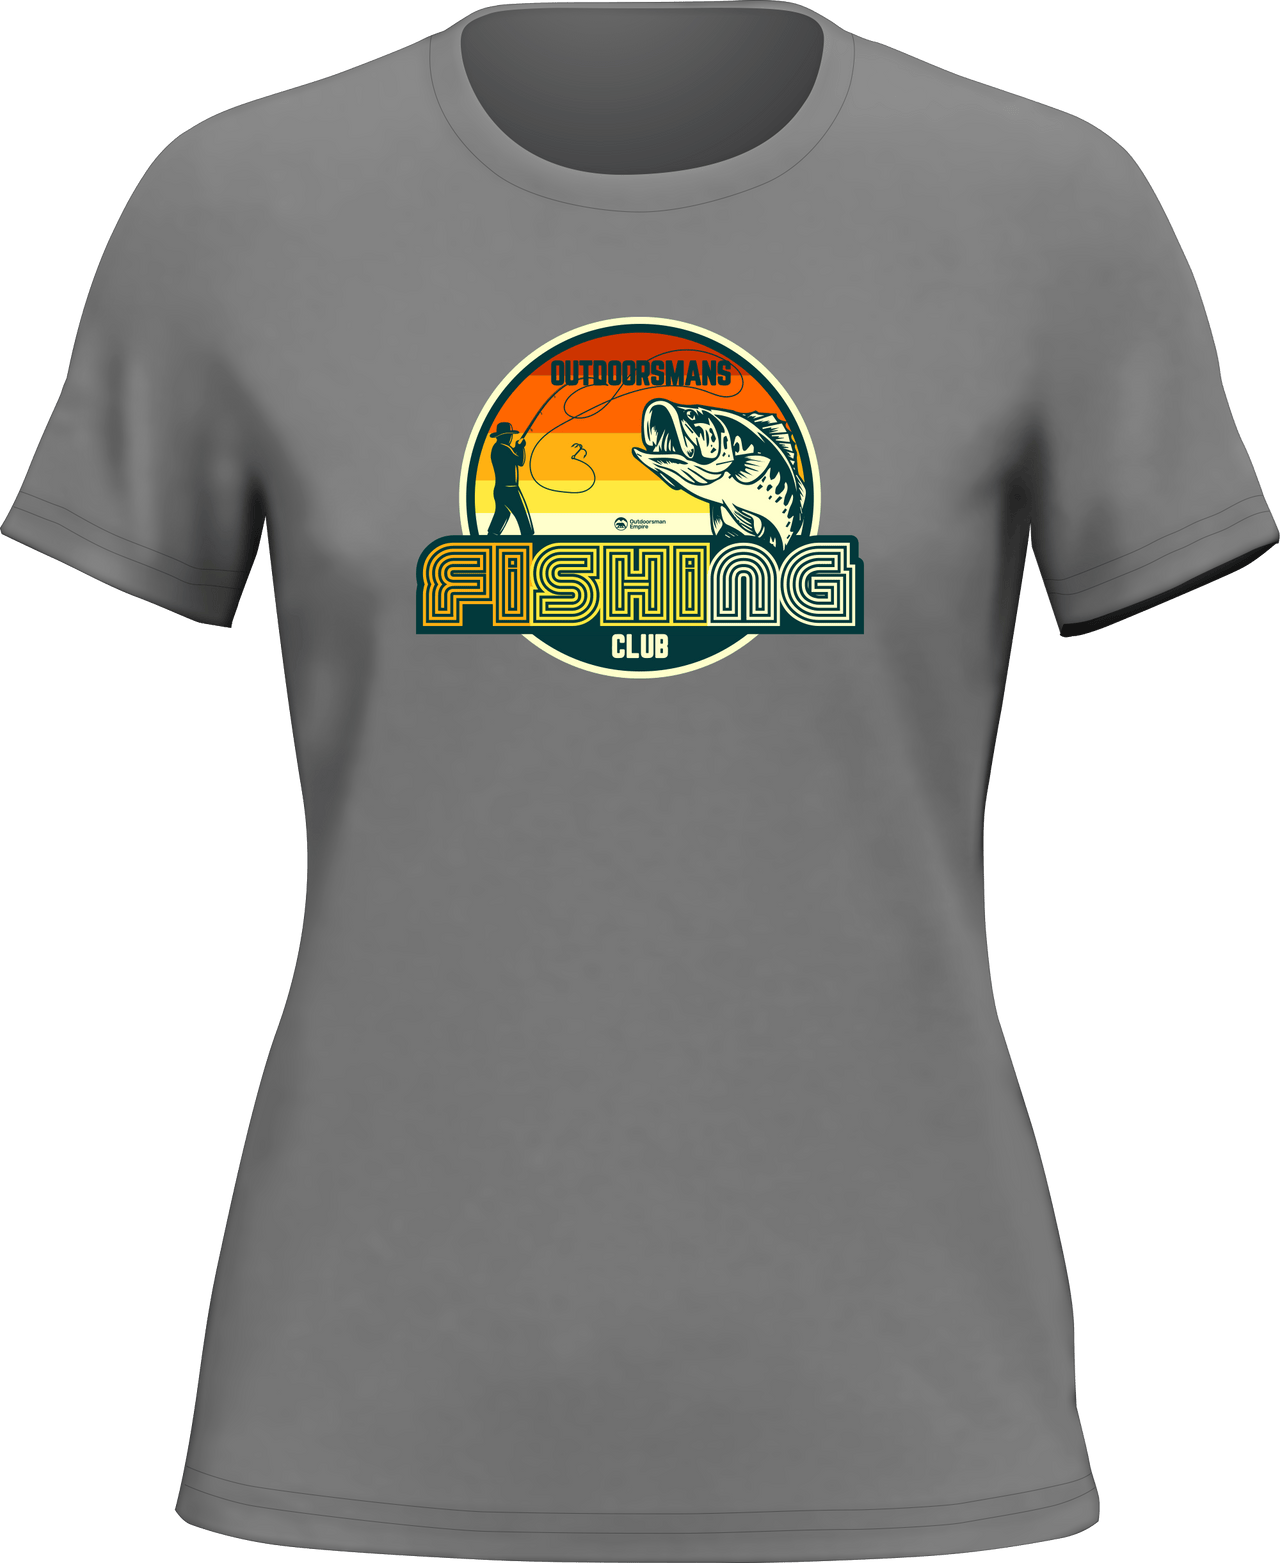 Outdoorsman Fishing Club 80 T-Shirt for Women